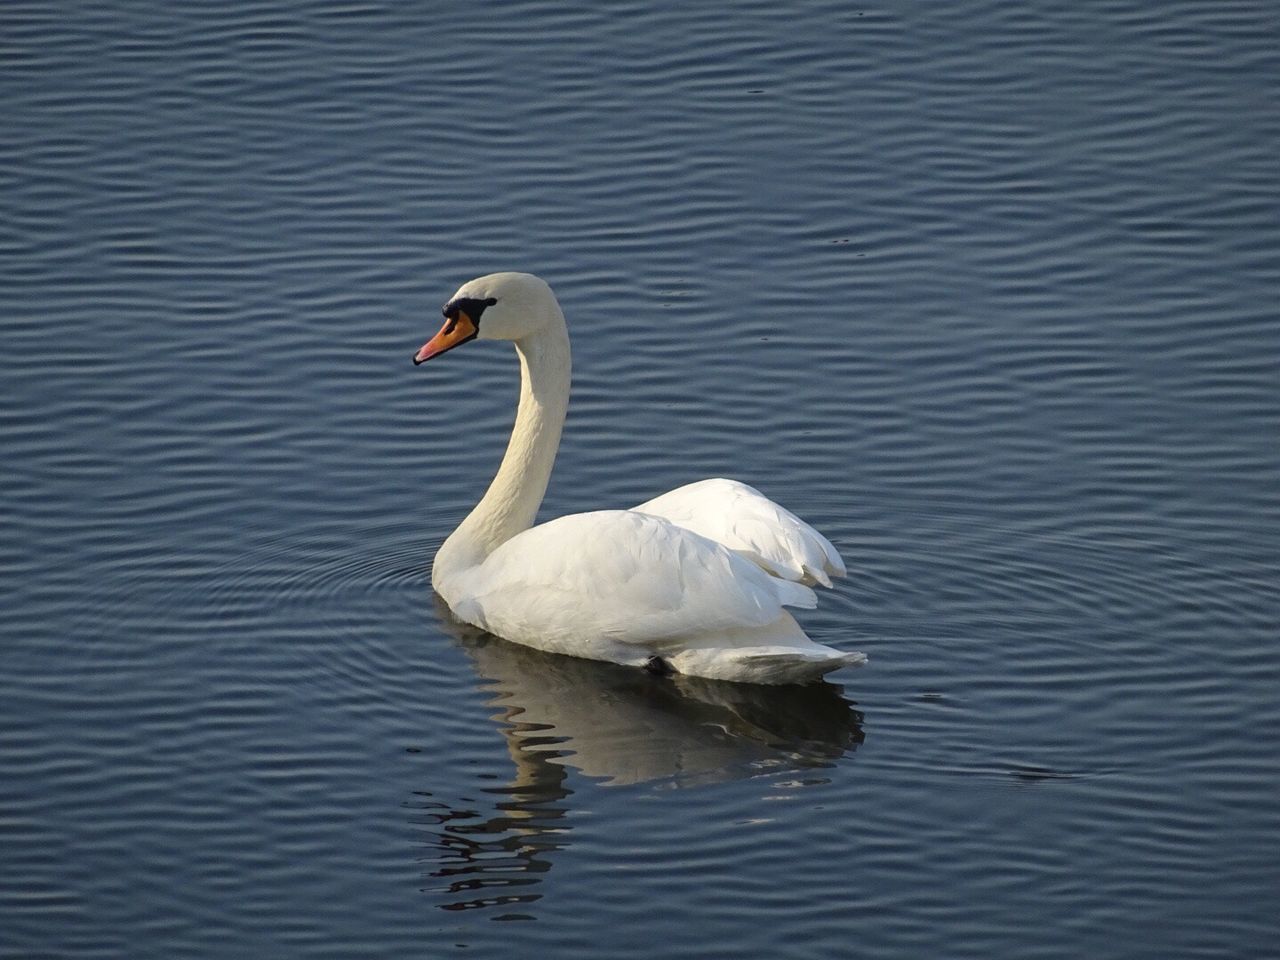 WHITE SWAN SWIMMING IN LAKE